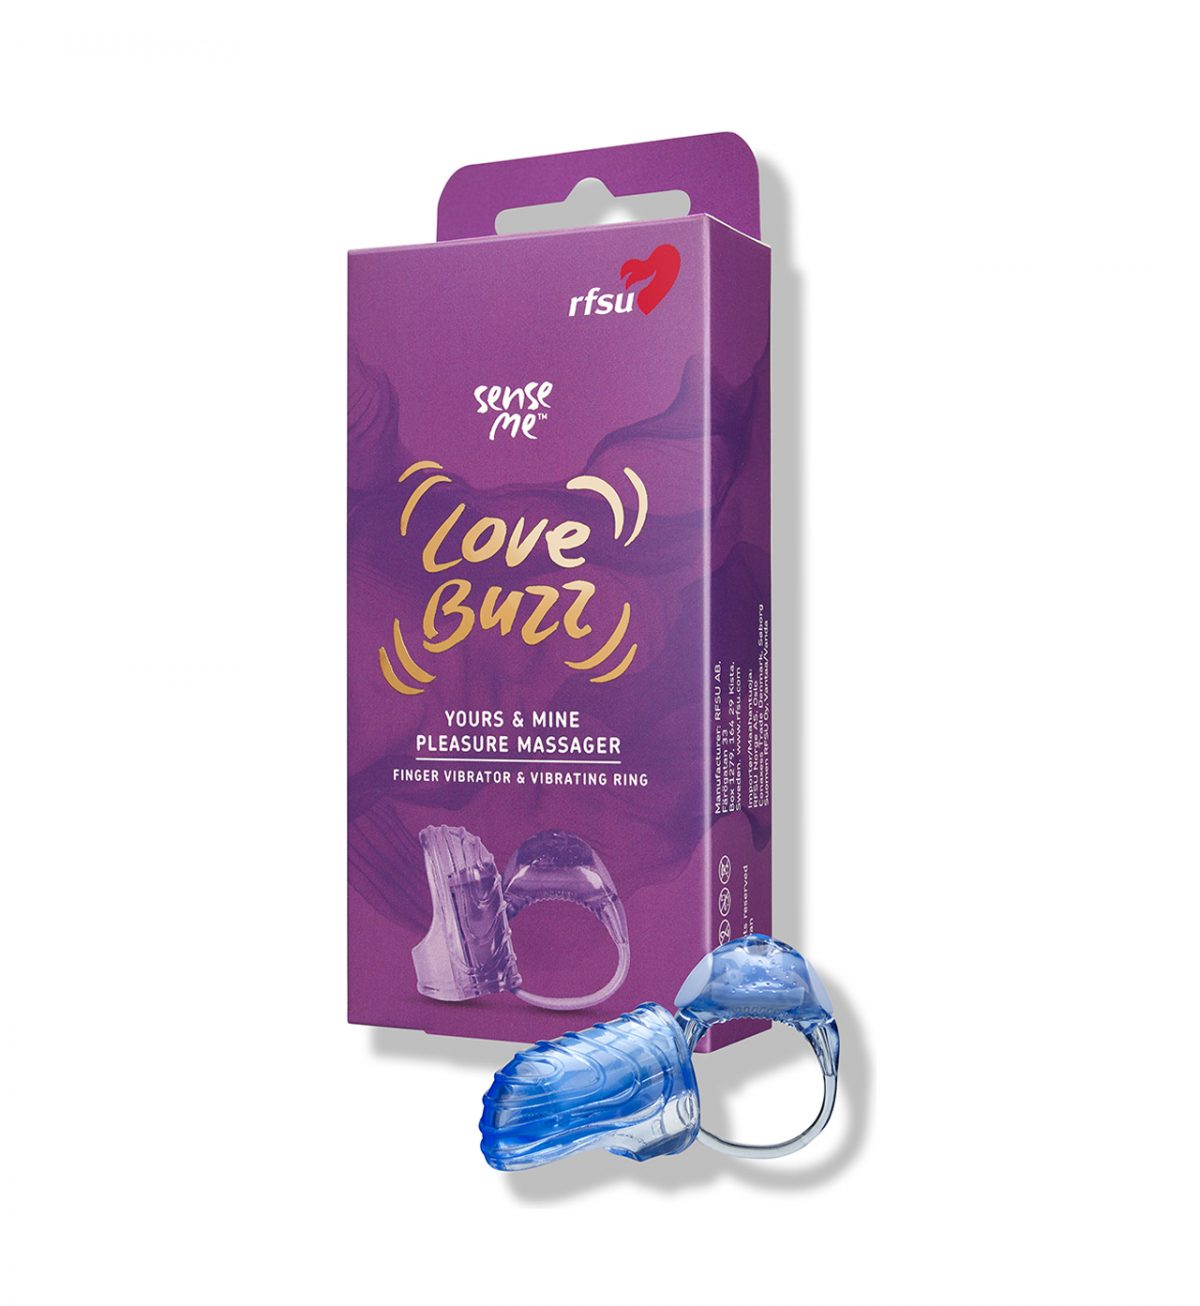 Love Buzz Yours & Mine - Fingervibrator og vibratorring for utvendig stimulering - RFSU